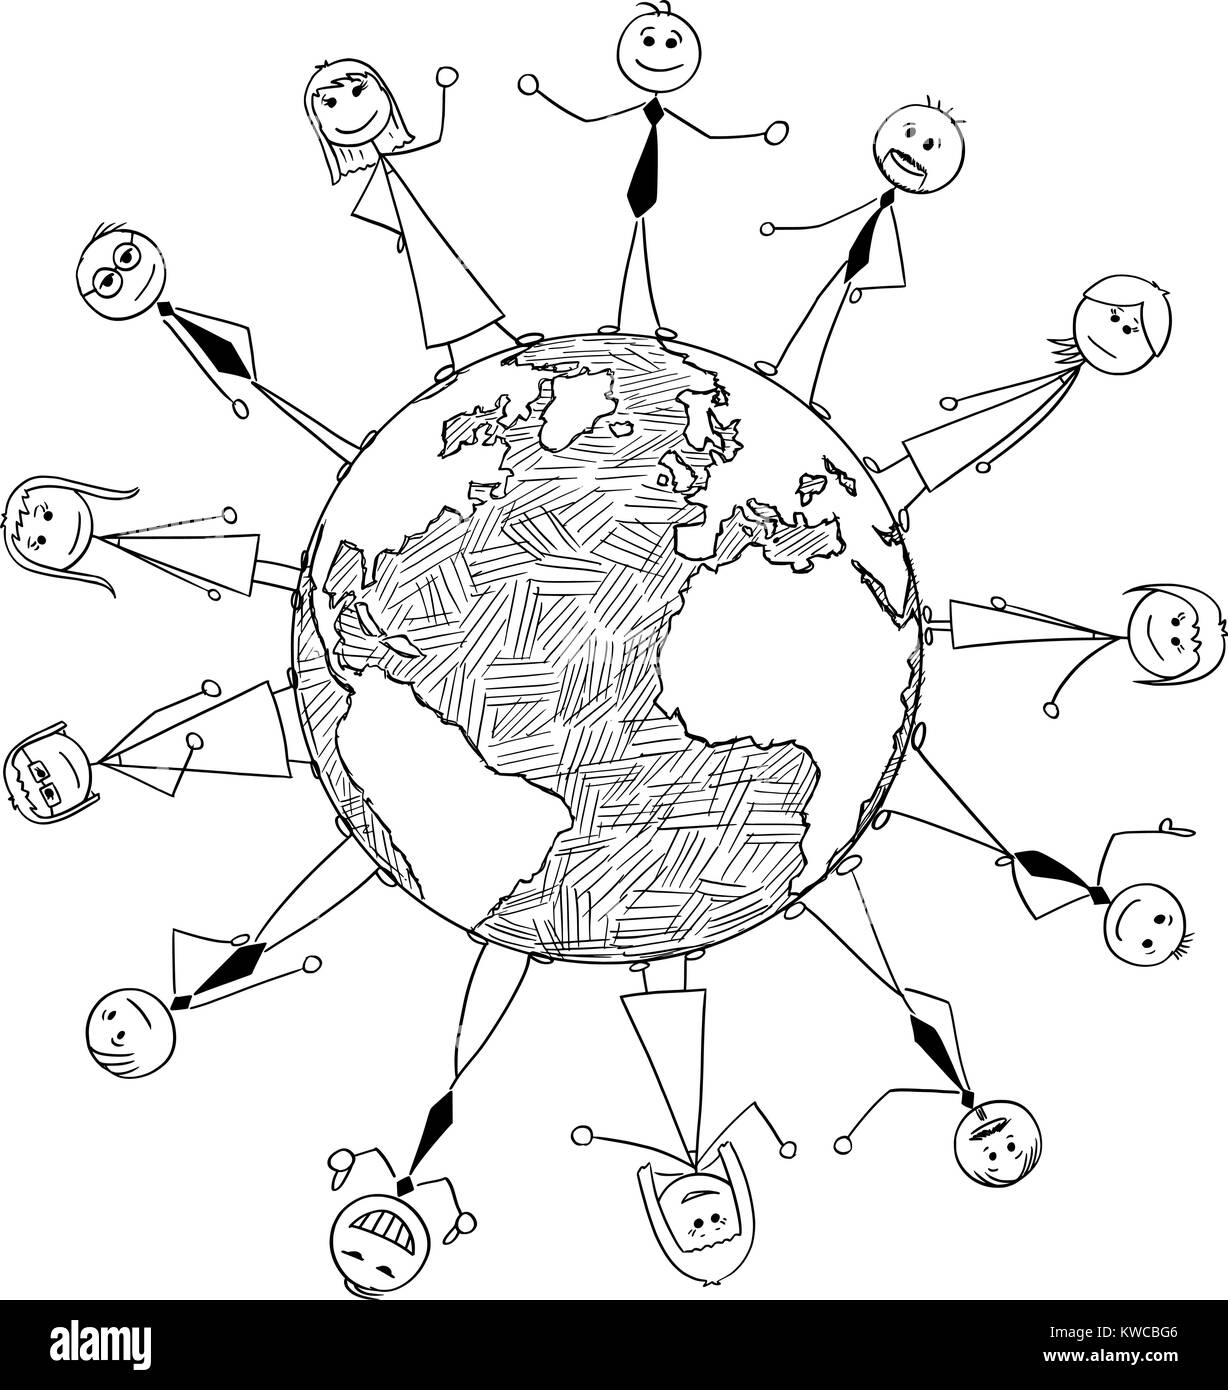 Cartoon stick Mann Zeichnung konzeptuelle Abbildung: internationale Zusammenarbeit der Geschäftsleute rund um den Planeten Erde Weltkugel stehend. Stock Vektor